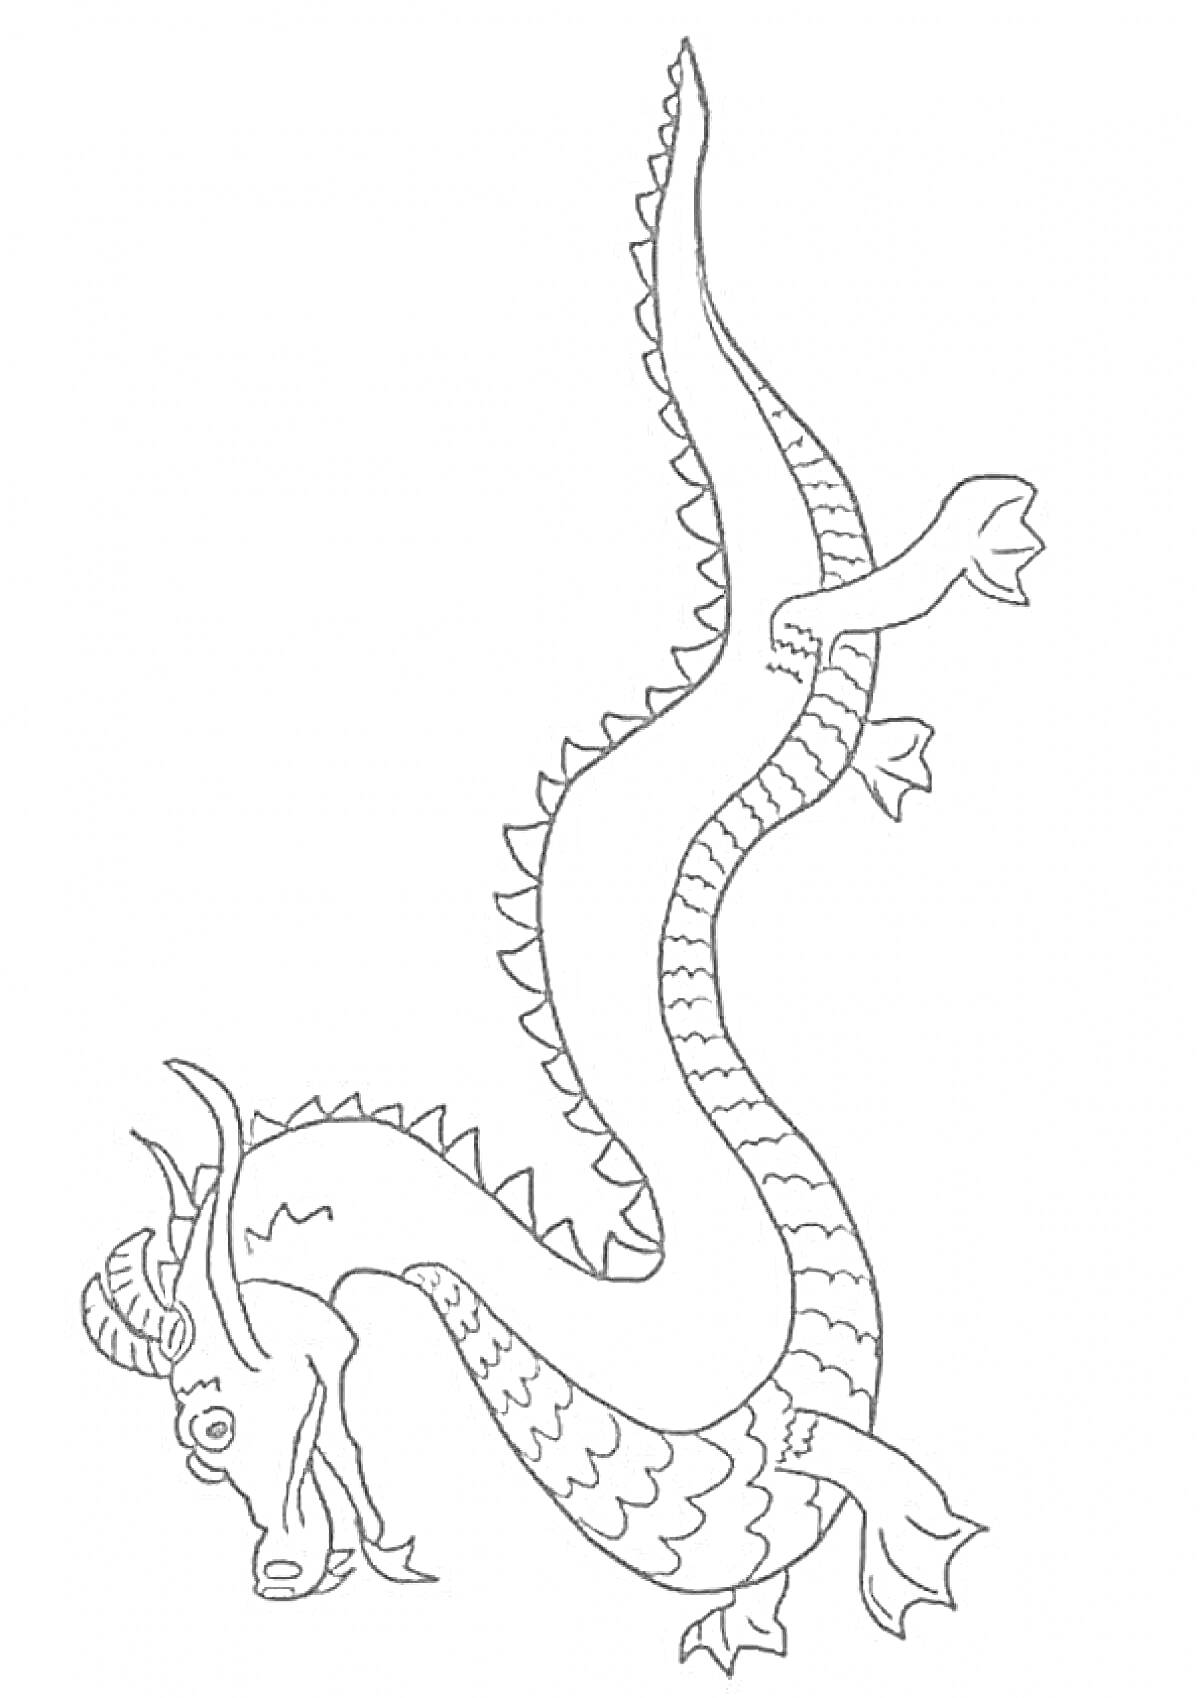 Раскраска Китайский дракон с длинным изгибающимся телом, чешуйками, рогами и лапами